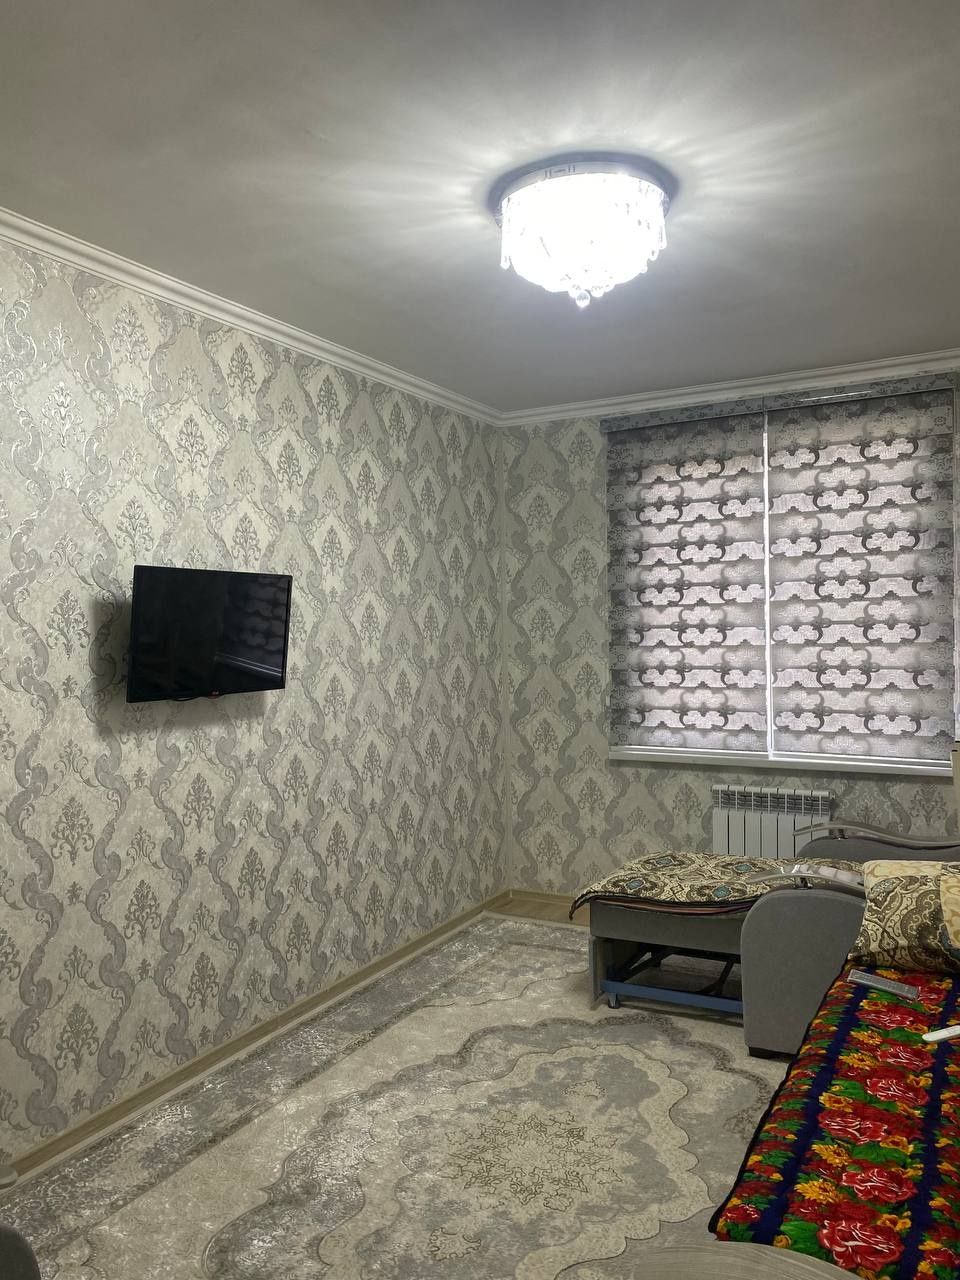 Продаётся 1 комнатная квартира в Янги Хаётском районе город Ташкент